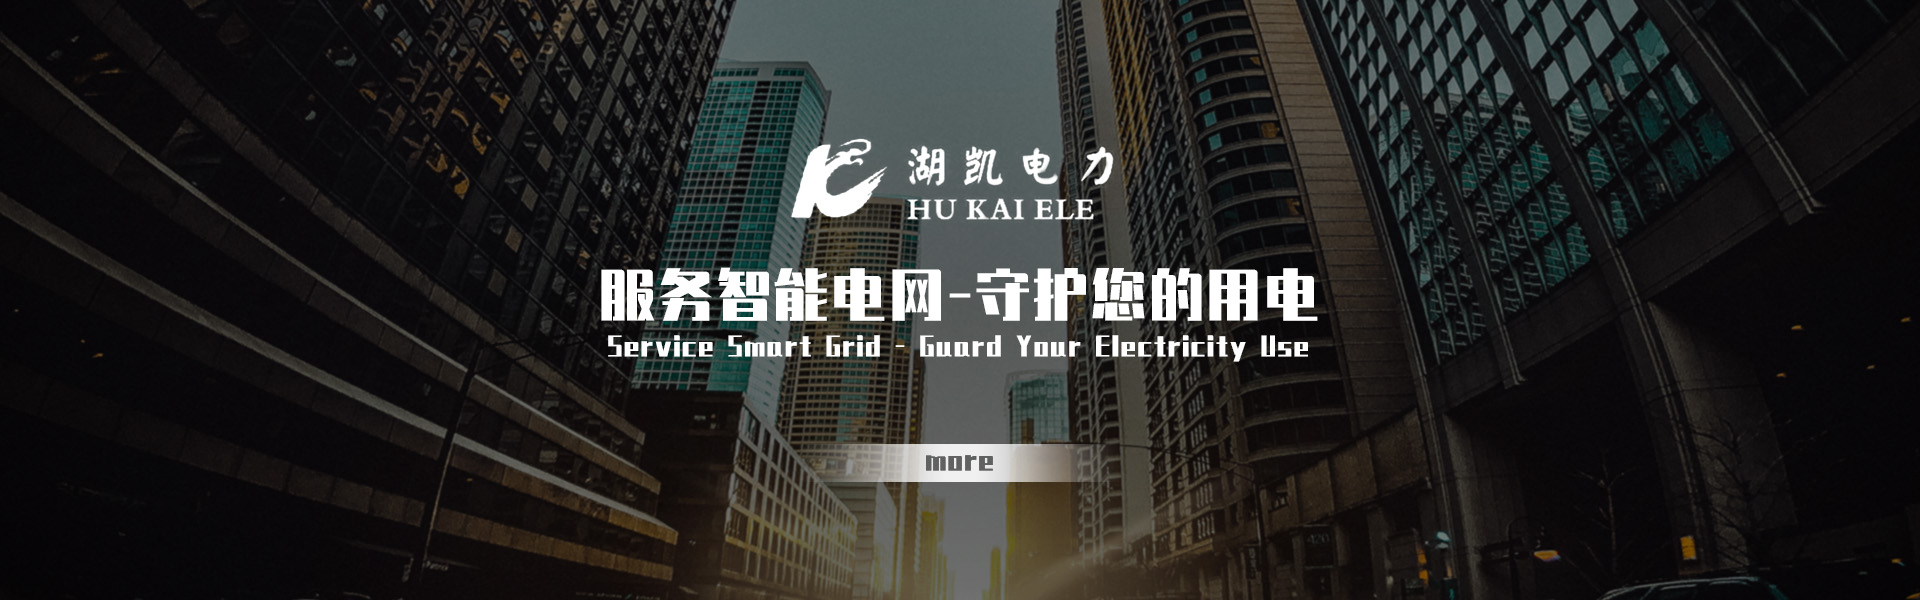 上海湖凯电力设备有限公司